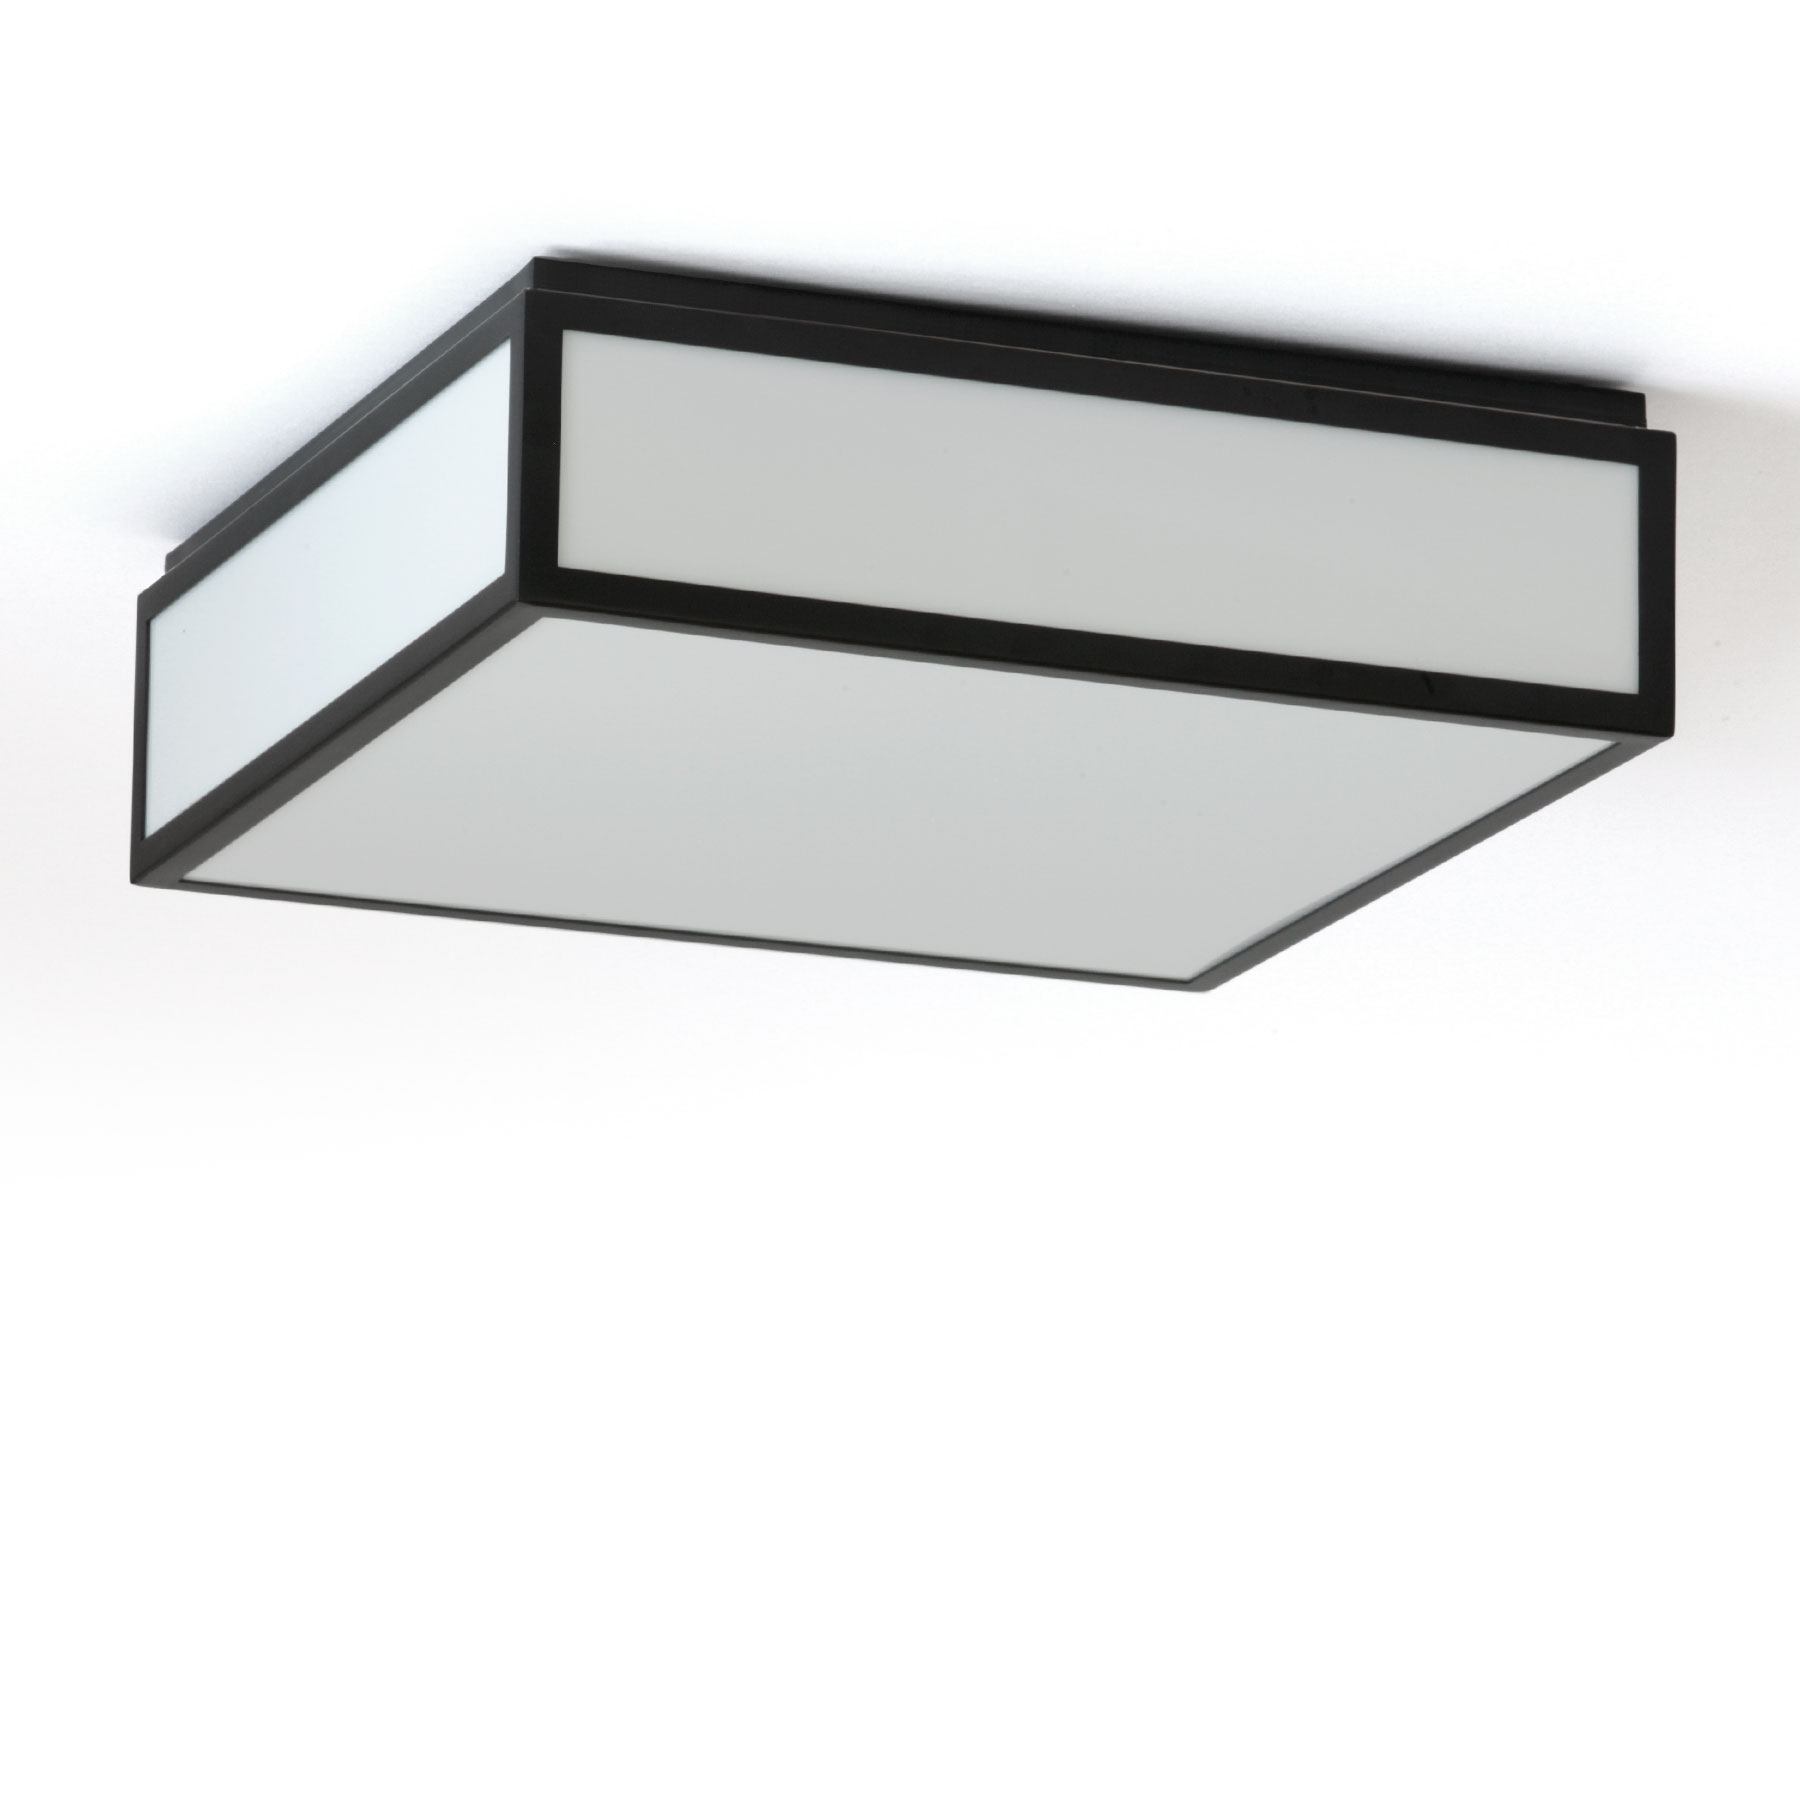 Quadratische LED-Deckenleuchte schwarz-weiß, auch für Badezimmer, 30 cm